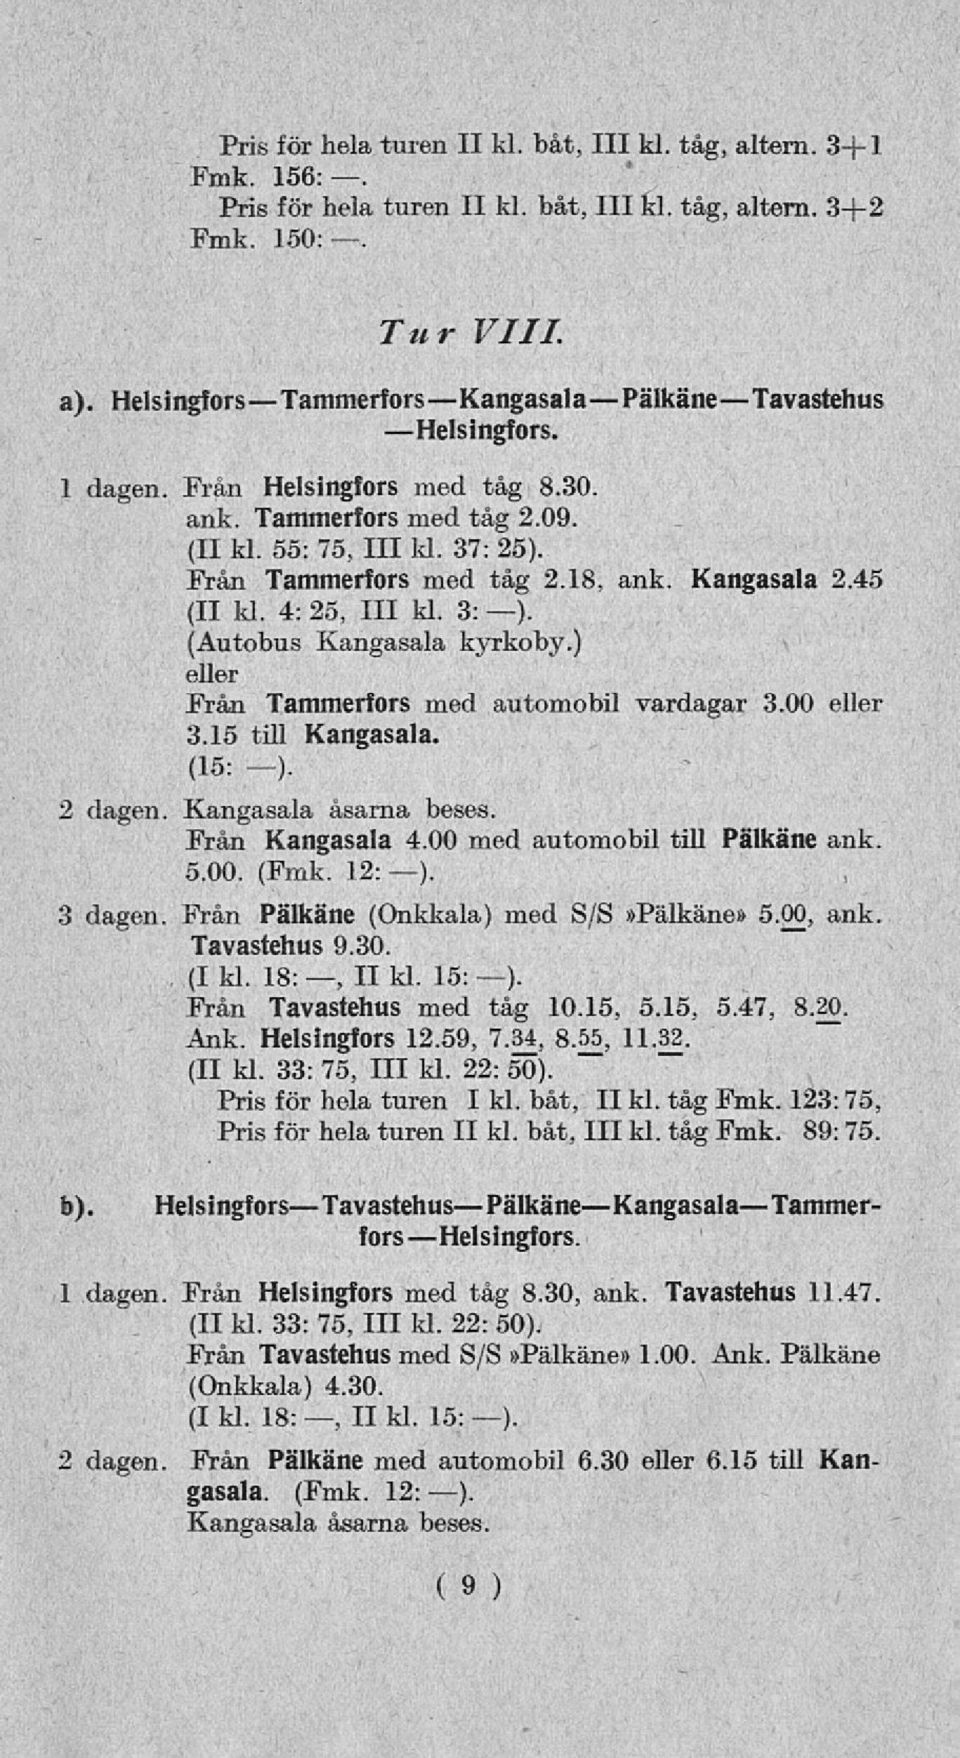 18, ank. Kangasala 2.45 (II ld. 4: 25, 111 kl. 3: ). (Autobus Kangasala kyrkoby.) eller Från Tammerfors med automobil vardagar 3.00 eller 3.15 till Kangasala. (15: -). 2 dagen. Kangasala åsarna beses.